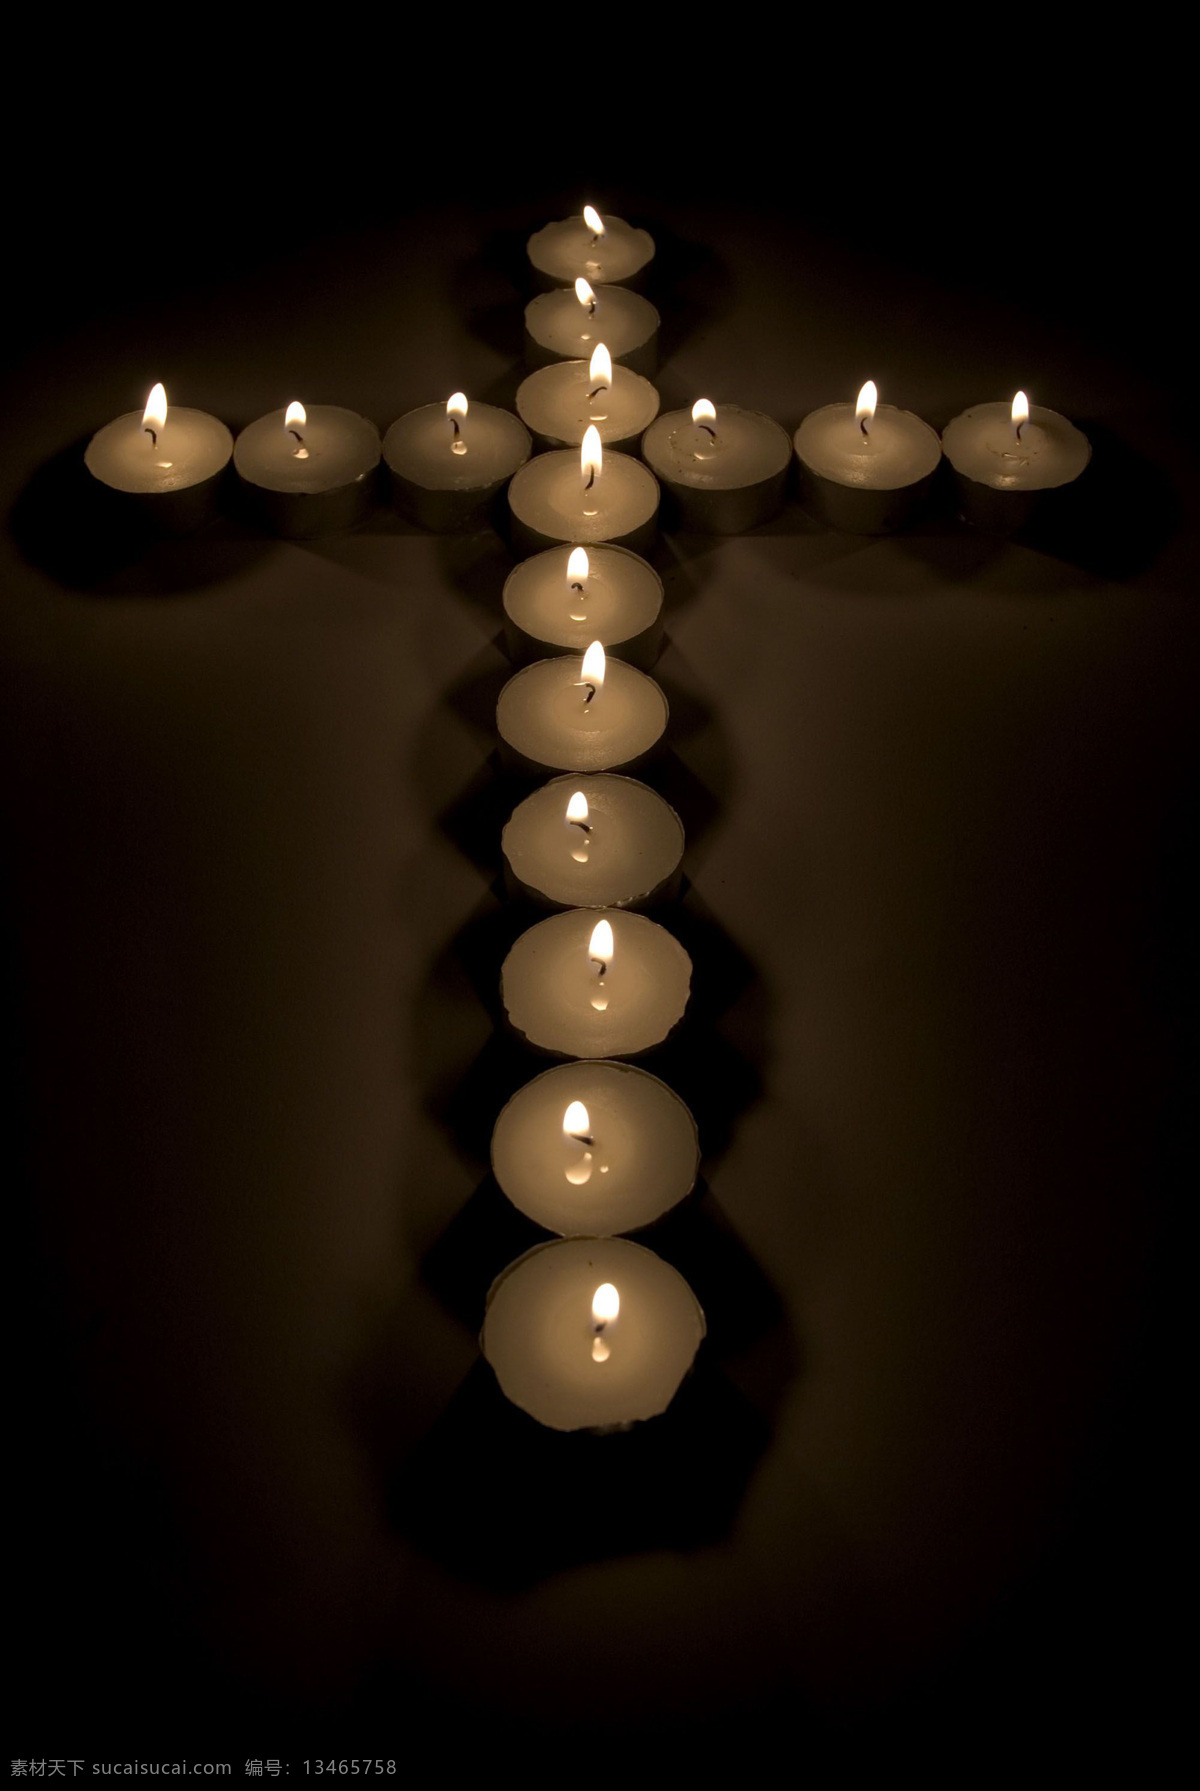 全球 首席 大百科 红烛 蜡烛 祈祷 烛光 祈望 烛光摇曳